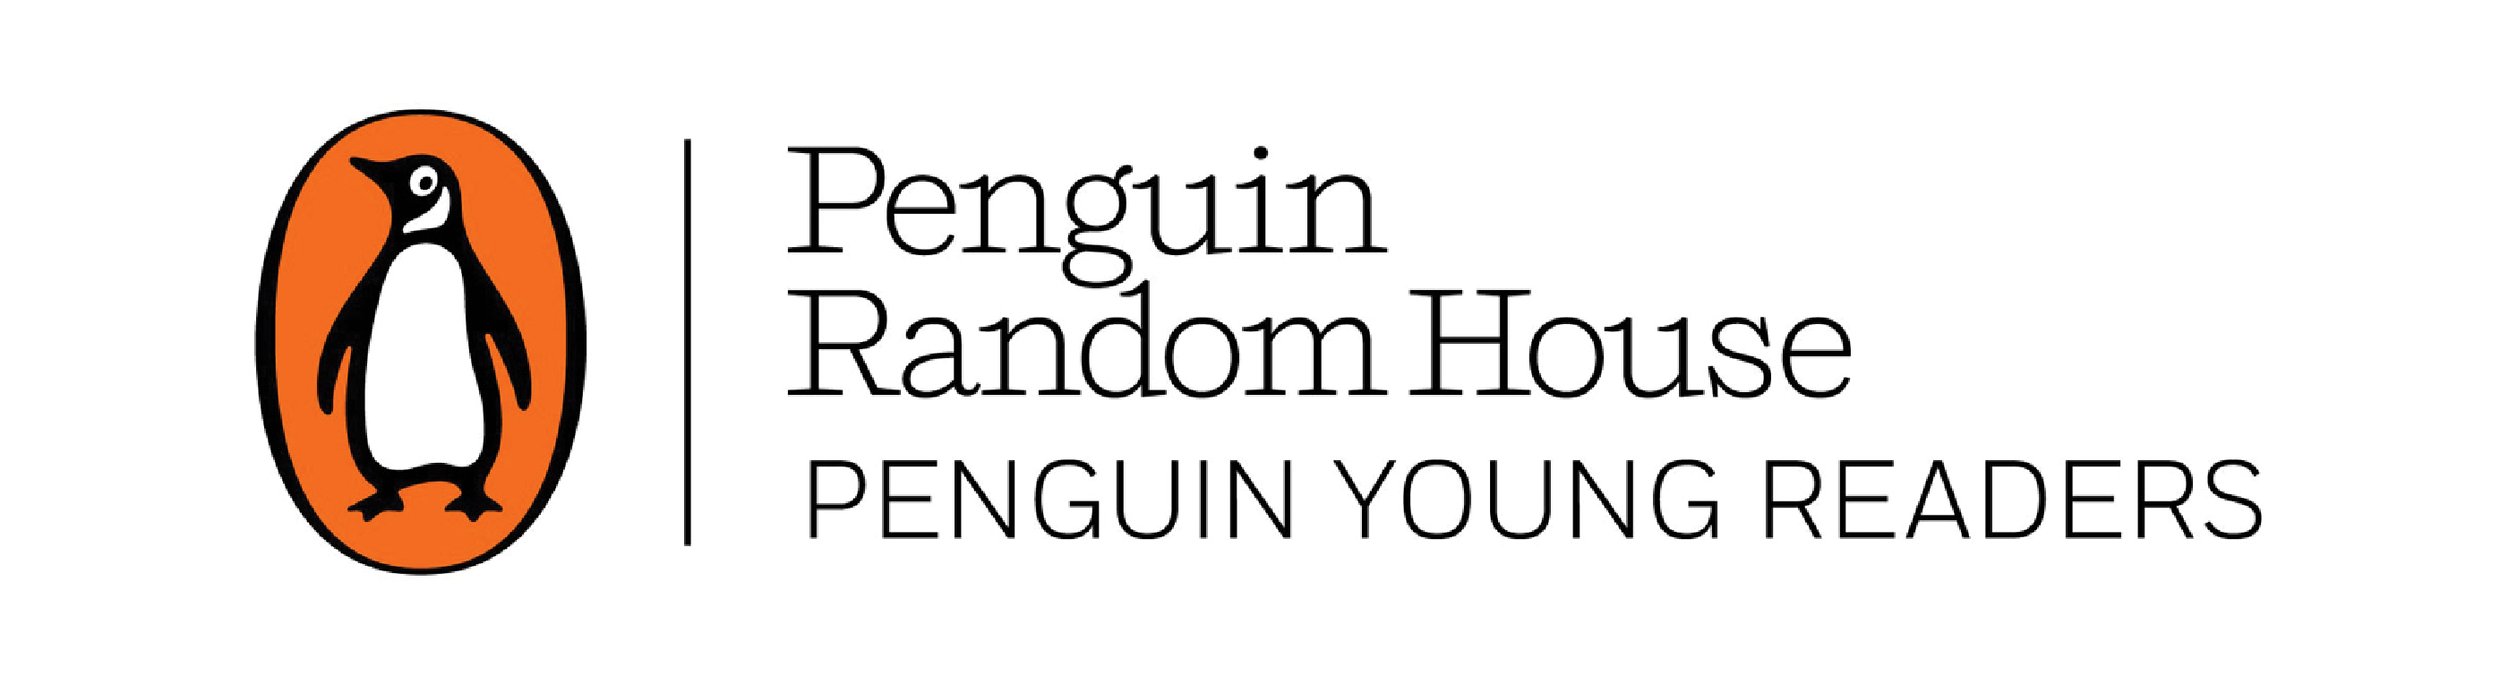 penguin_young_readers-01.jpg